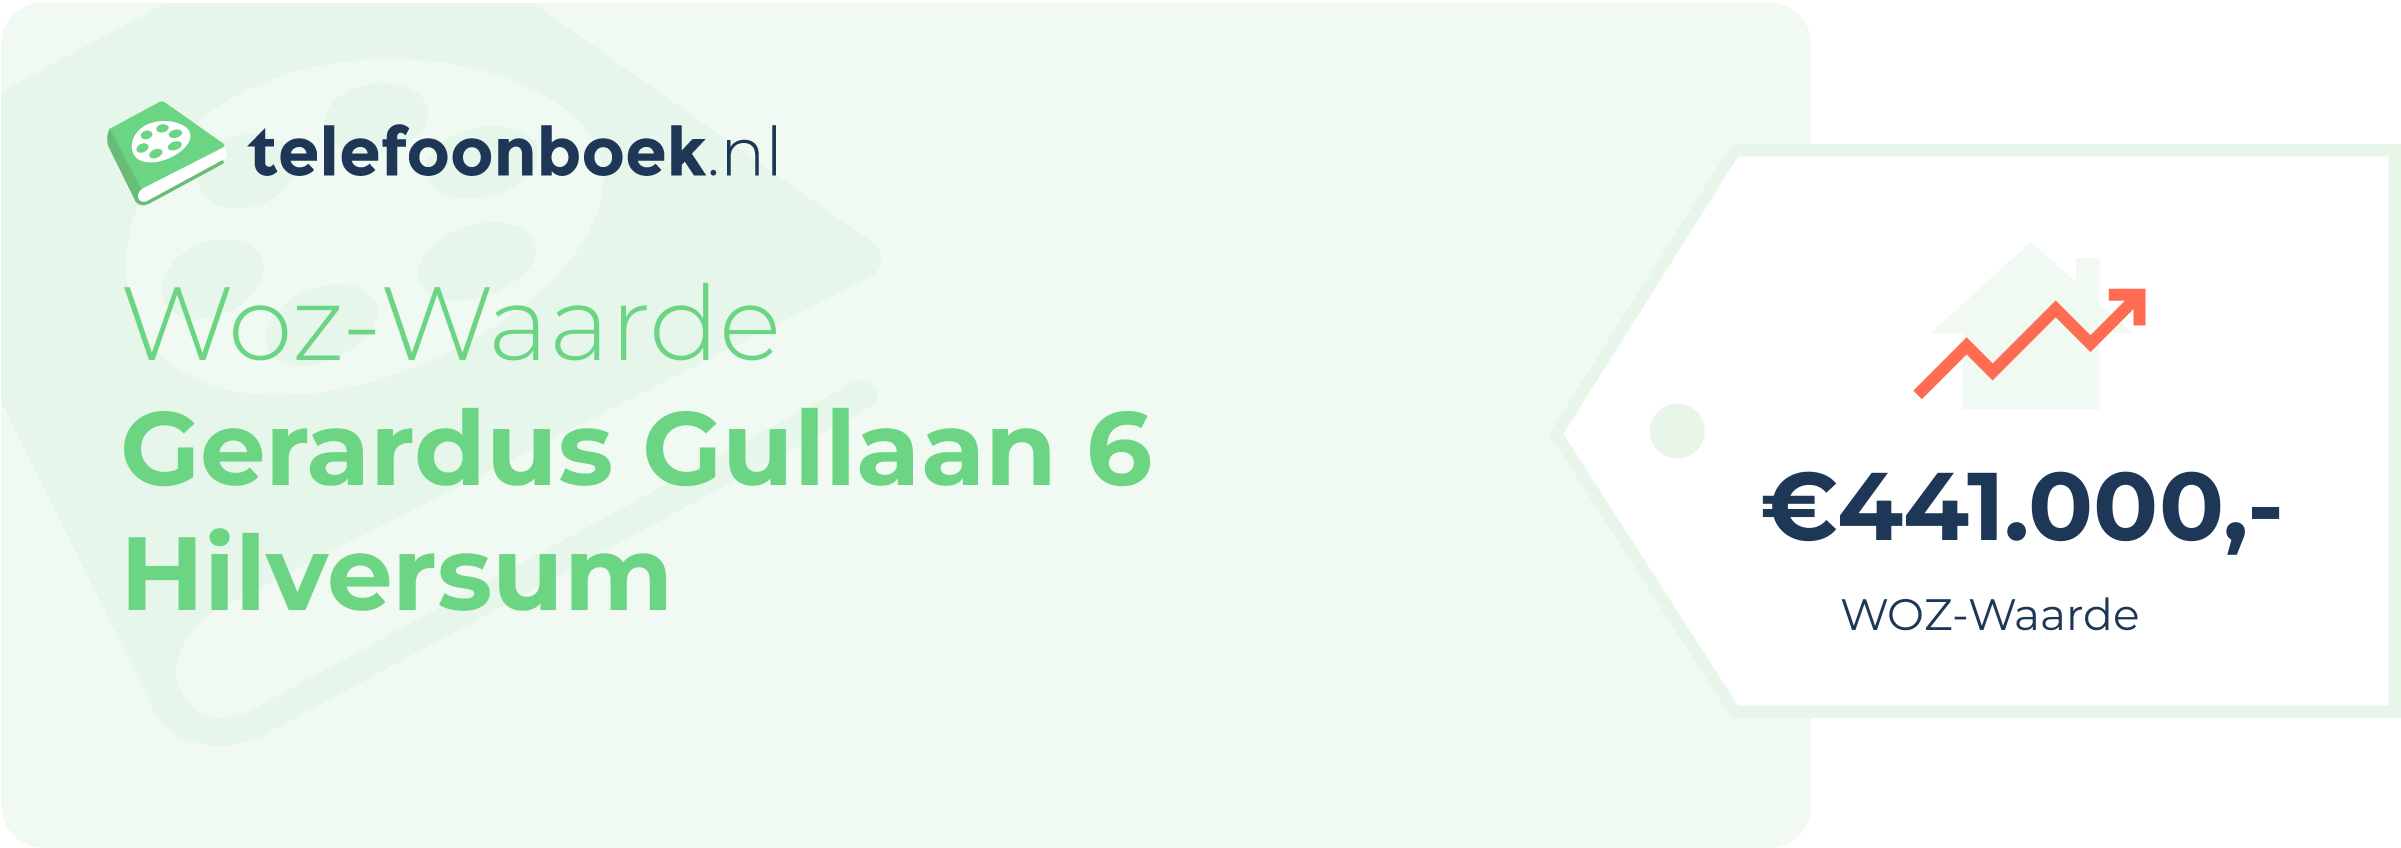 WOZ-waarde Gerardus Gullaan 6 Hilversum